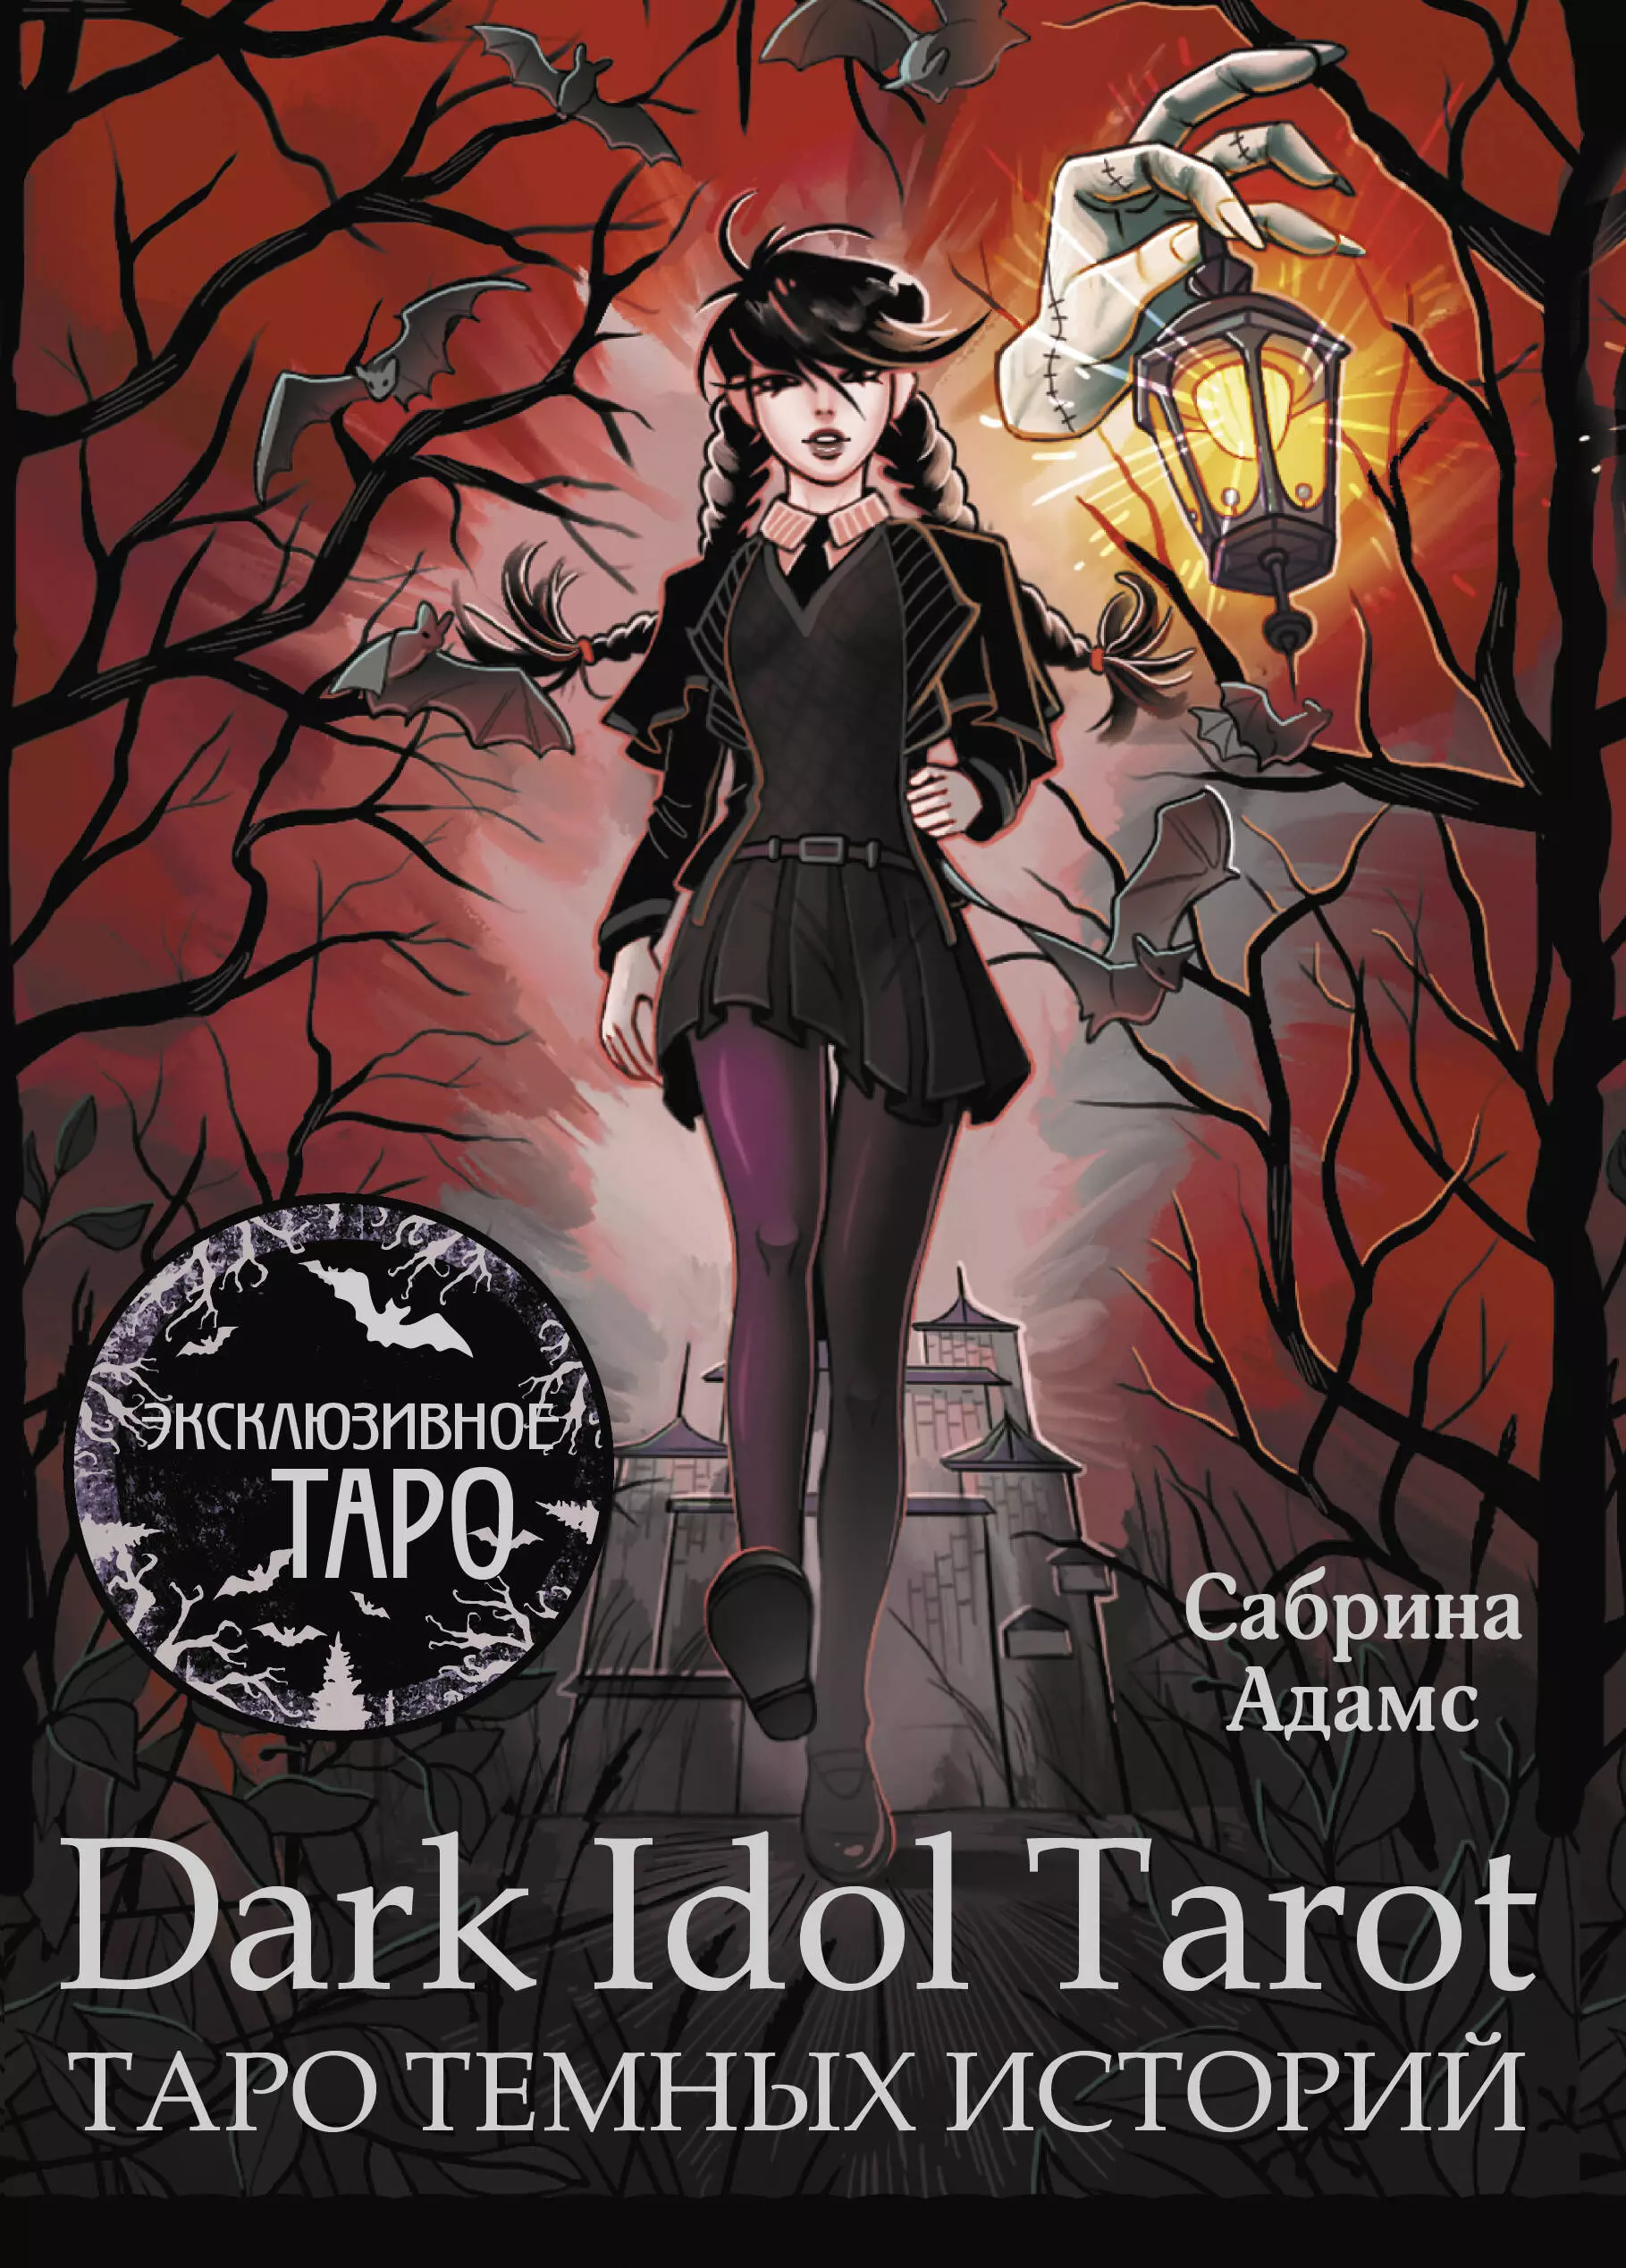 Адамс Сабрина Dark Idol Tarot. Таро темных историй (78 карт и руководство) карты уэйта золотое таро черной кошки golden black cat tarot agm urania